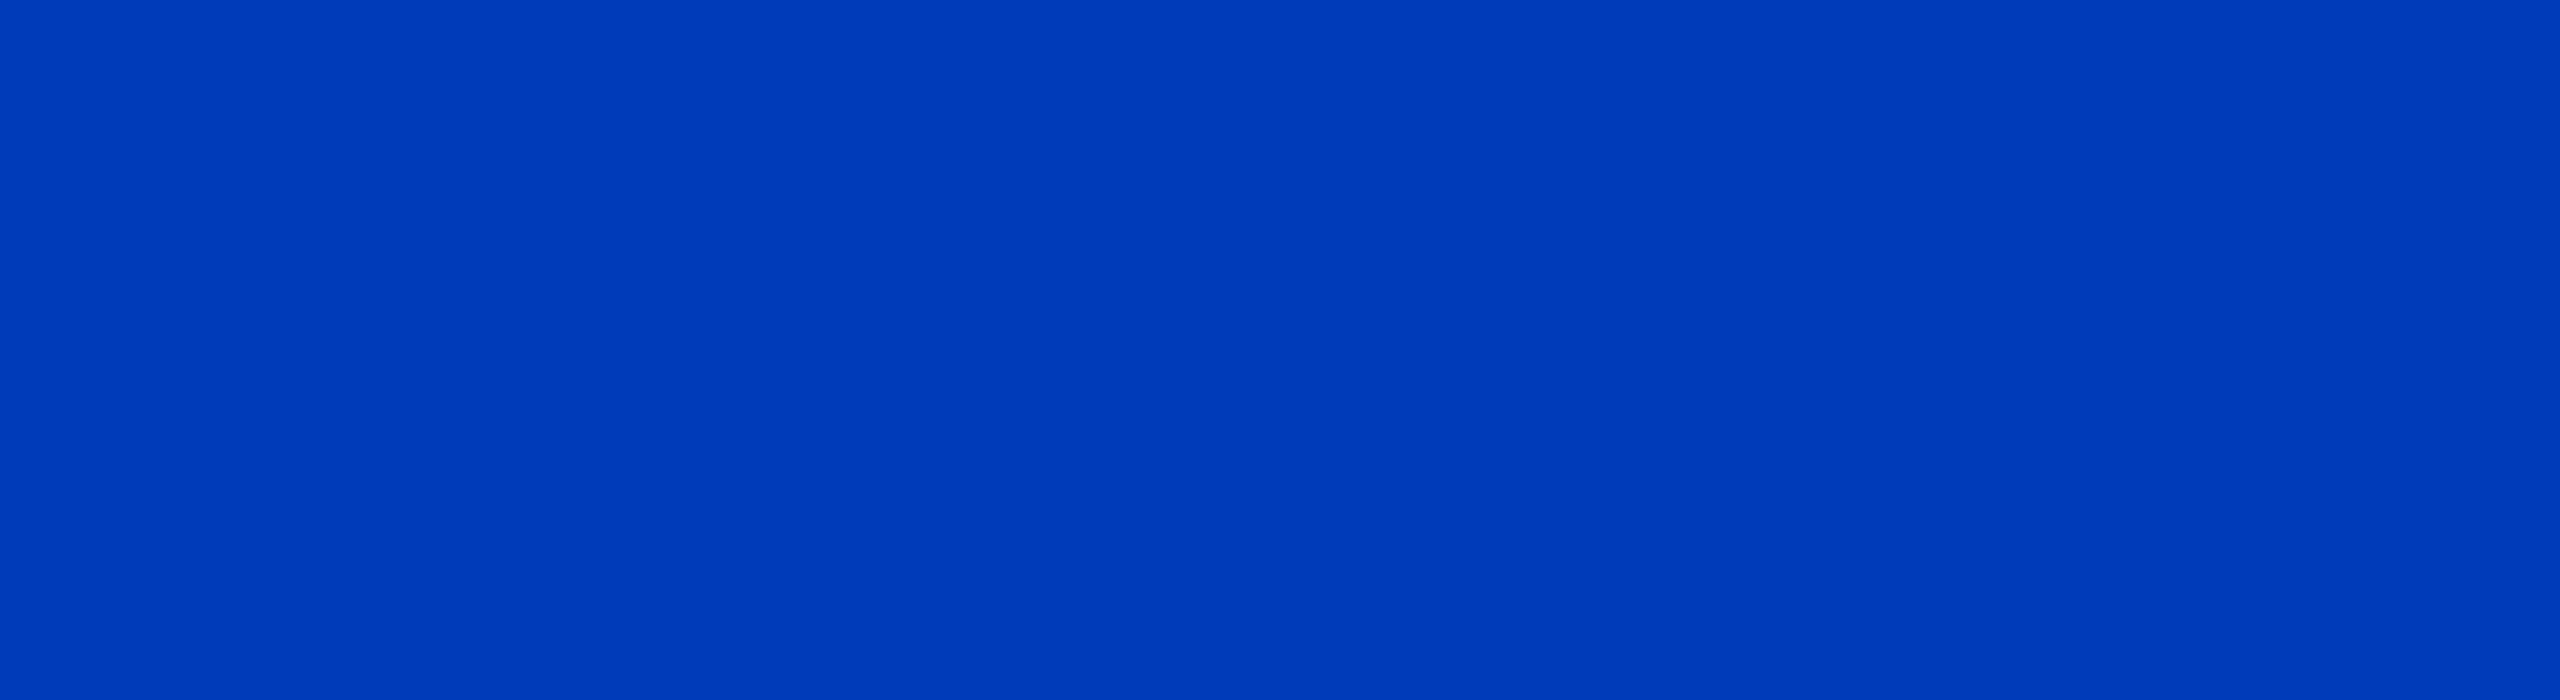 Develey blauer SNF Hintergrund